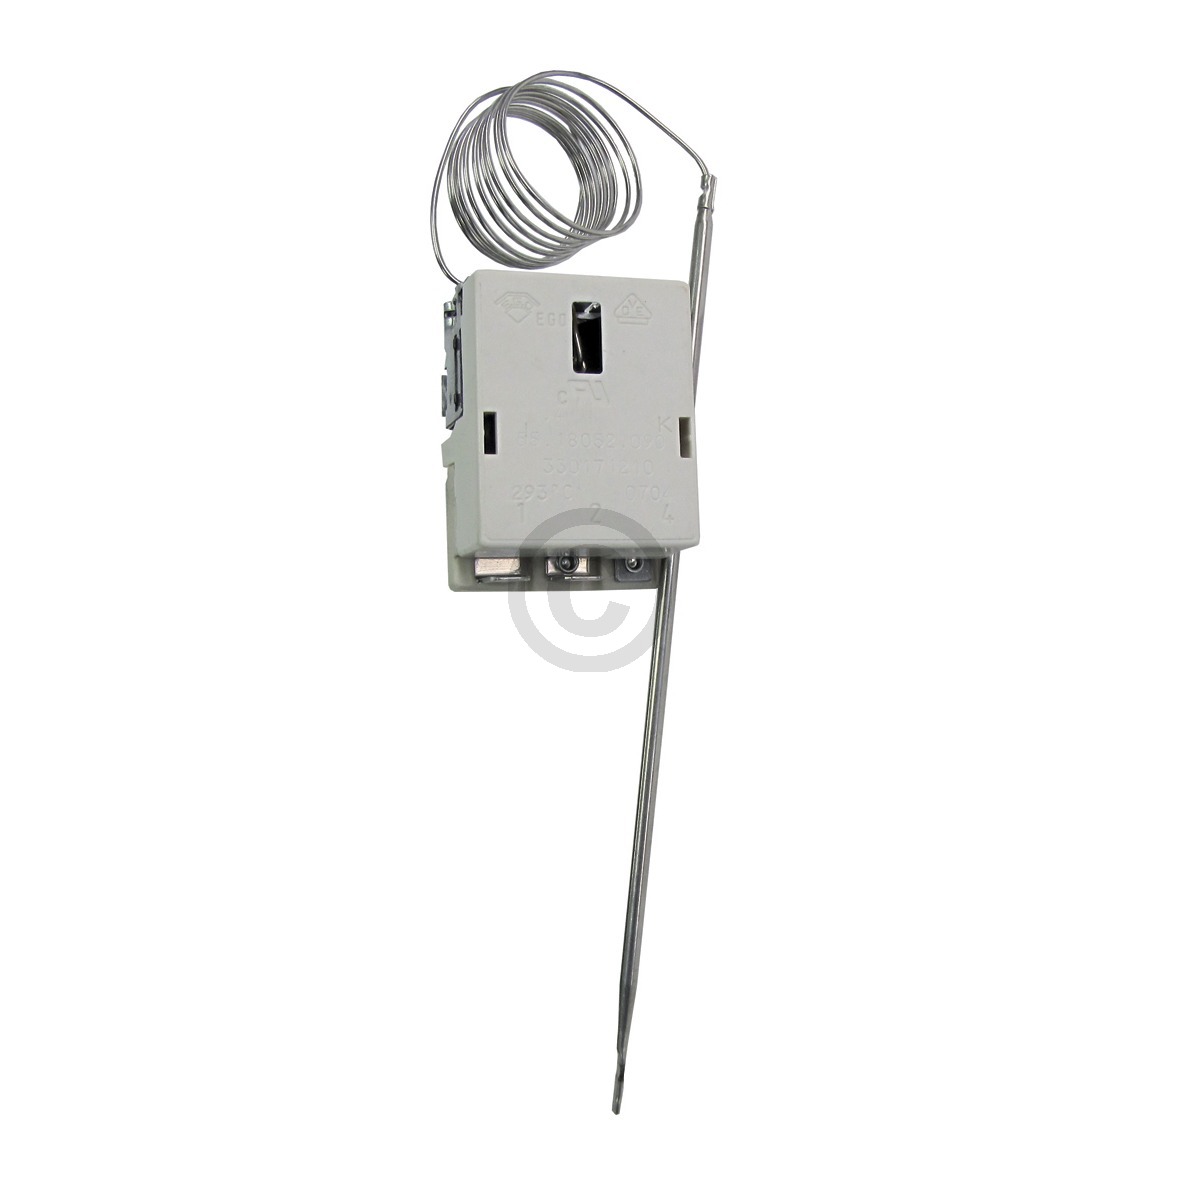 Thermostat 50-293°C EGO 55.17052.070 kompatibel mit ELECTROLUX 389077023/7 für Herd 